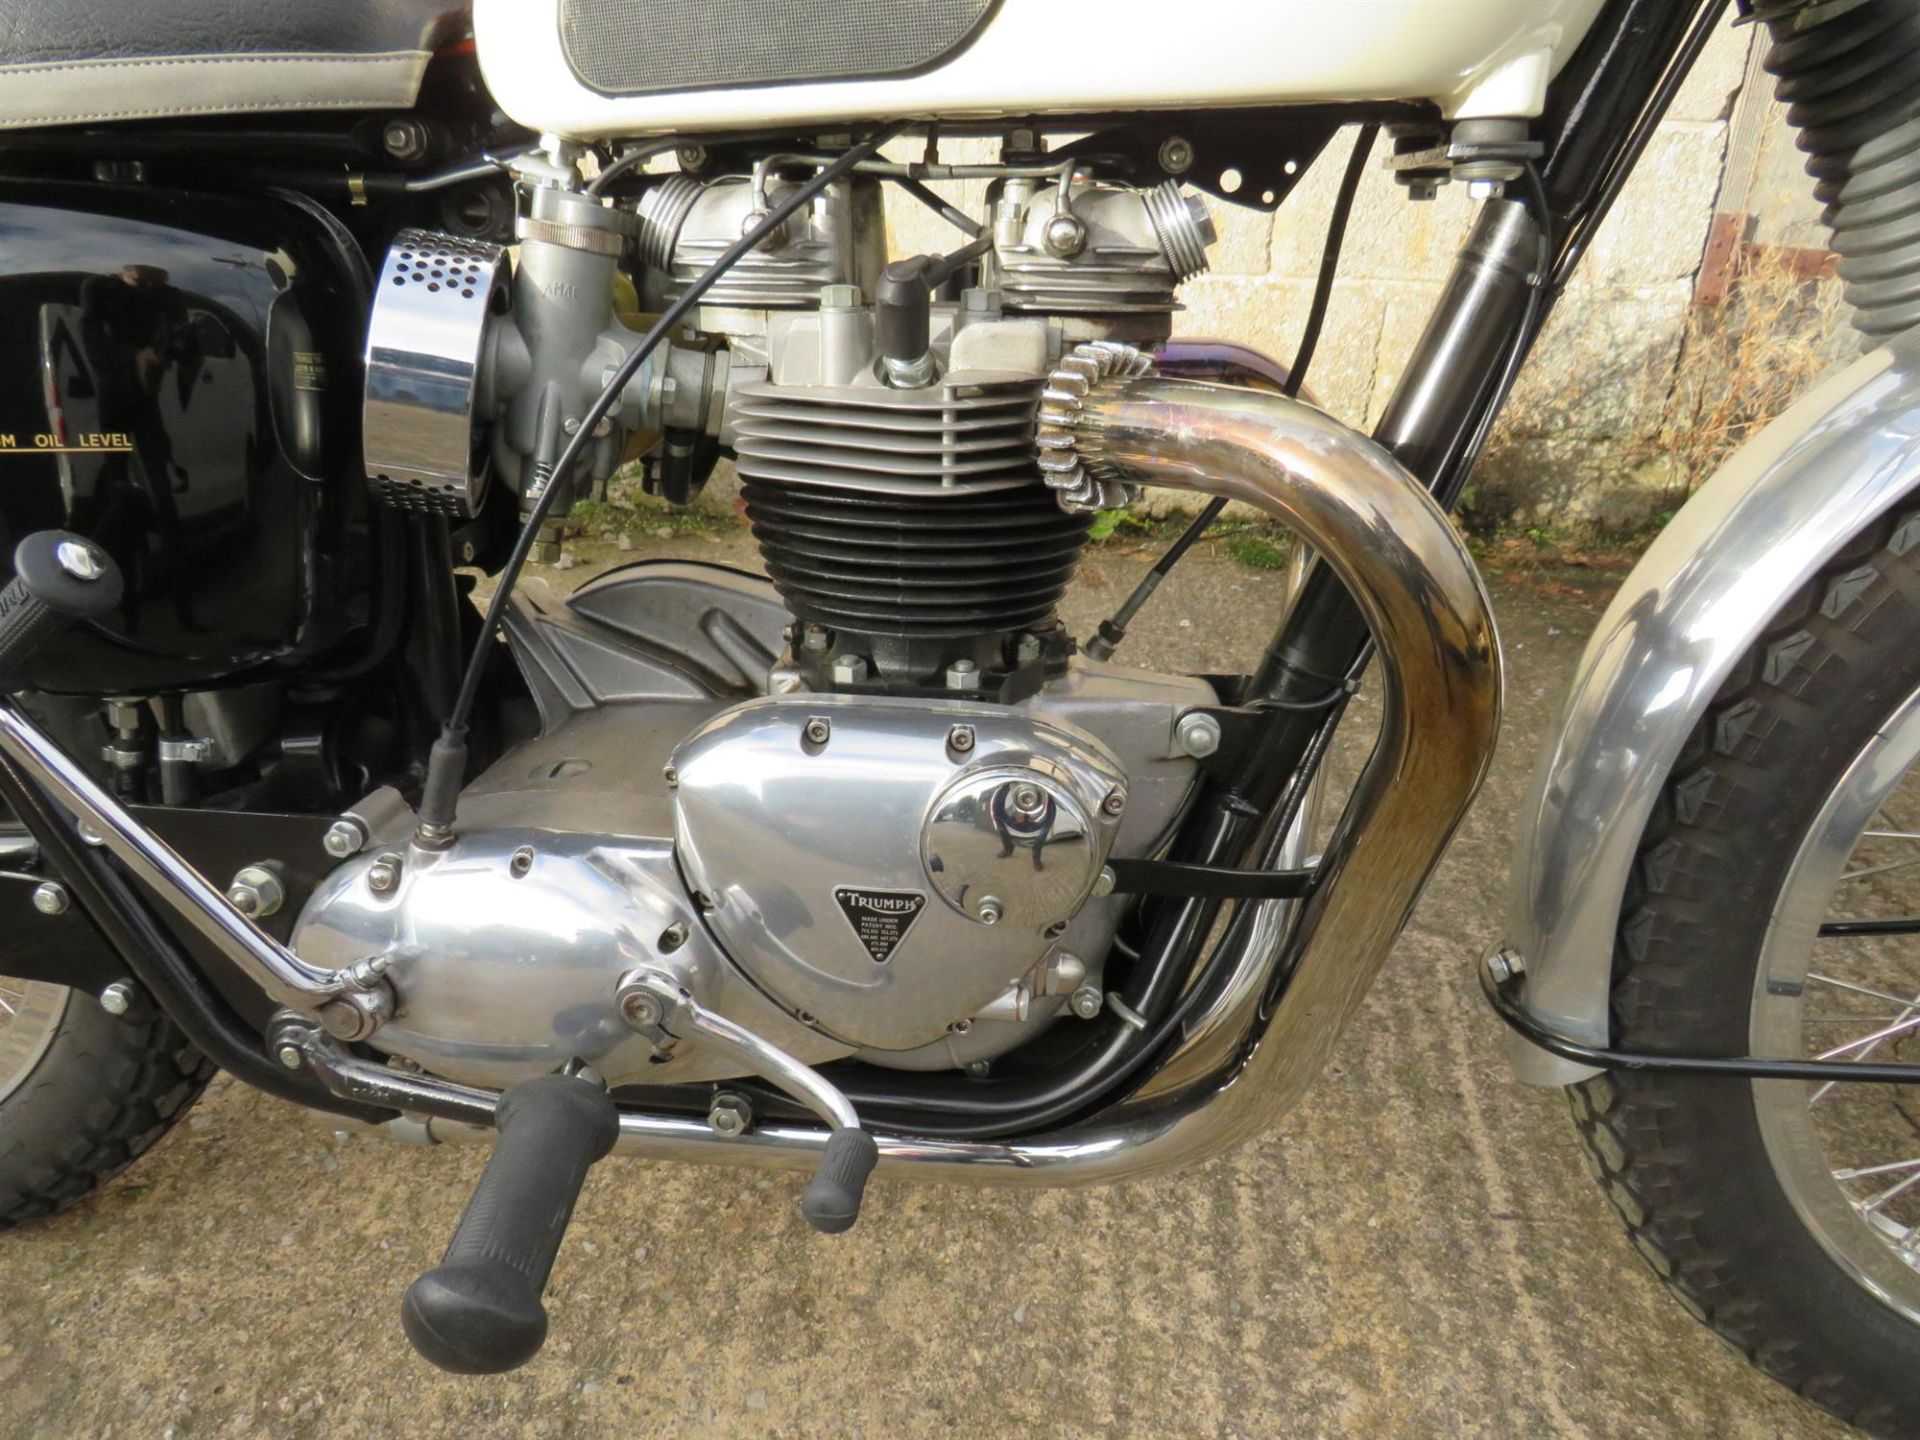 1966 Triumph T120 Bonneville TT Special 649cc - Image 3 of 10